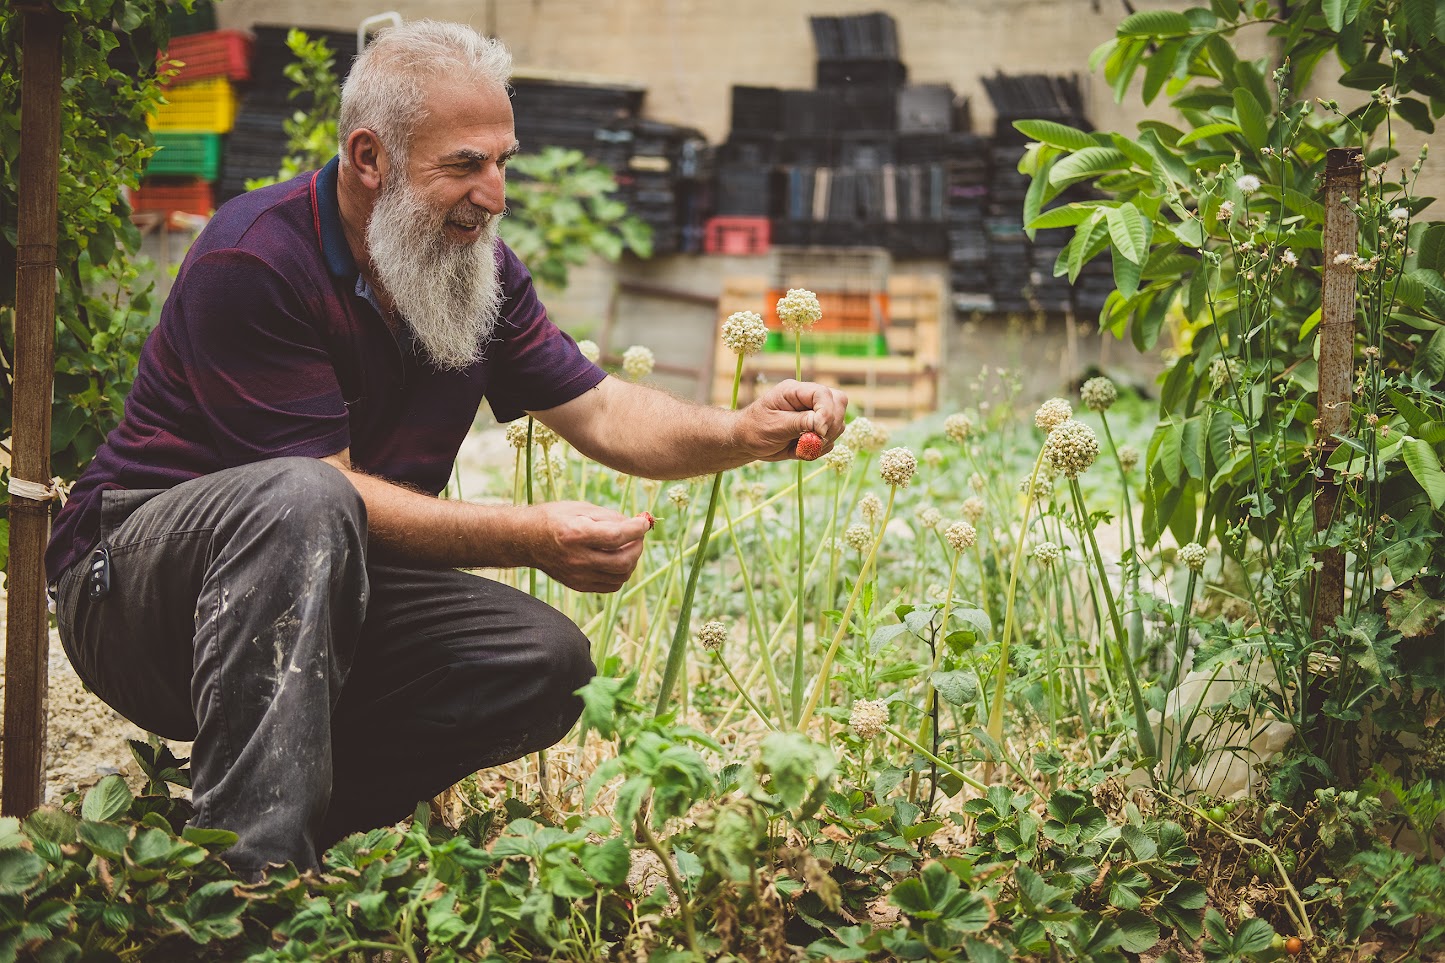 גבר מבוגר בבגדי עבודה, מטפל בצמחים שבגינה